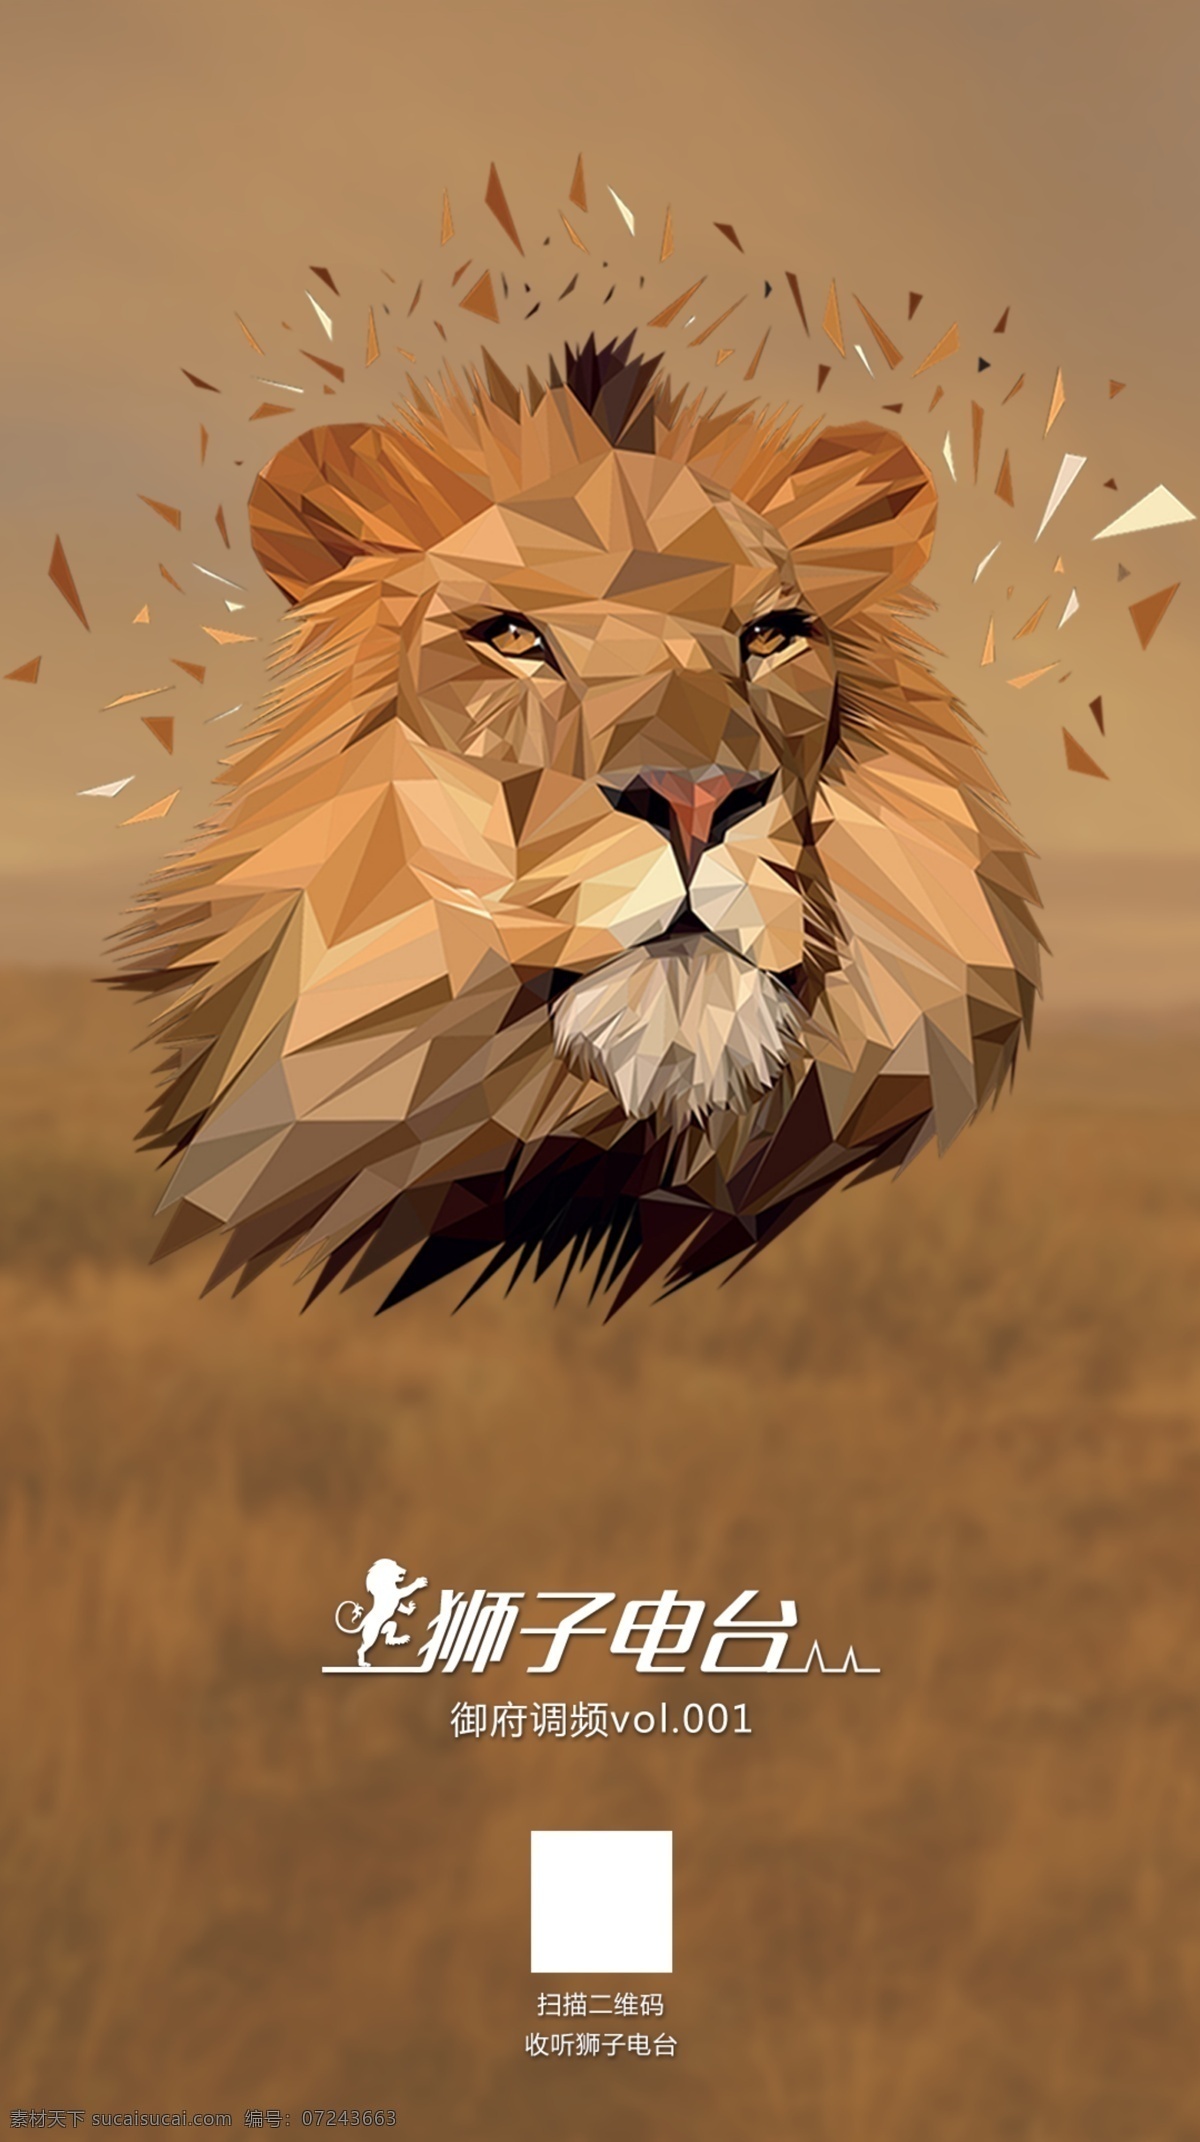 狮子电台 地产 朋友圈 狮子 lion 单图 系列 刷屏稿 电台 质感 分层